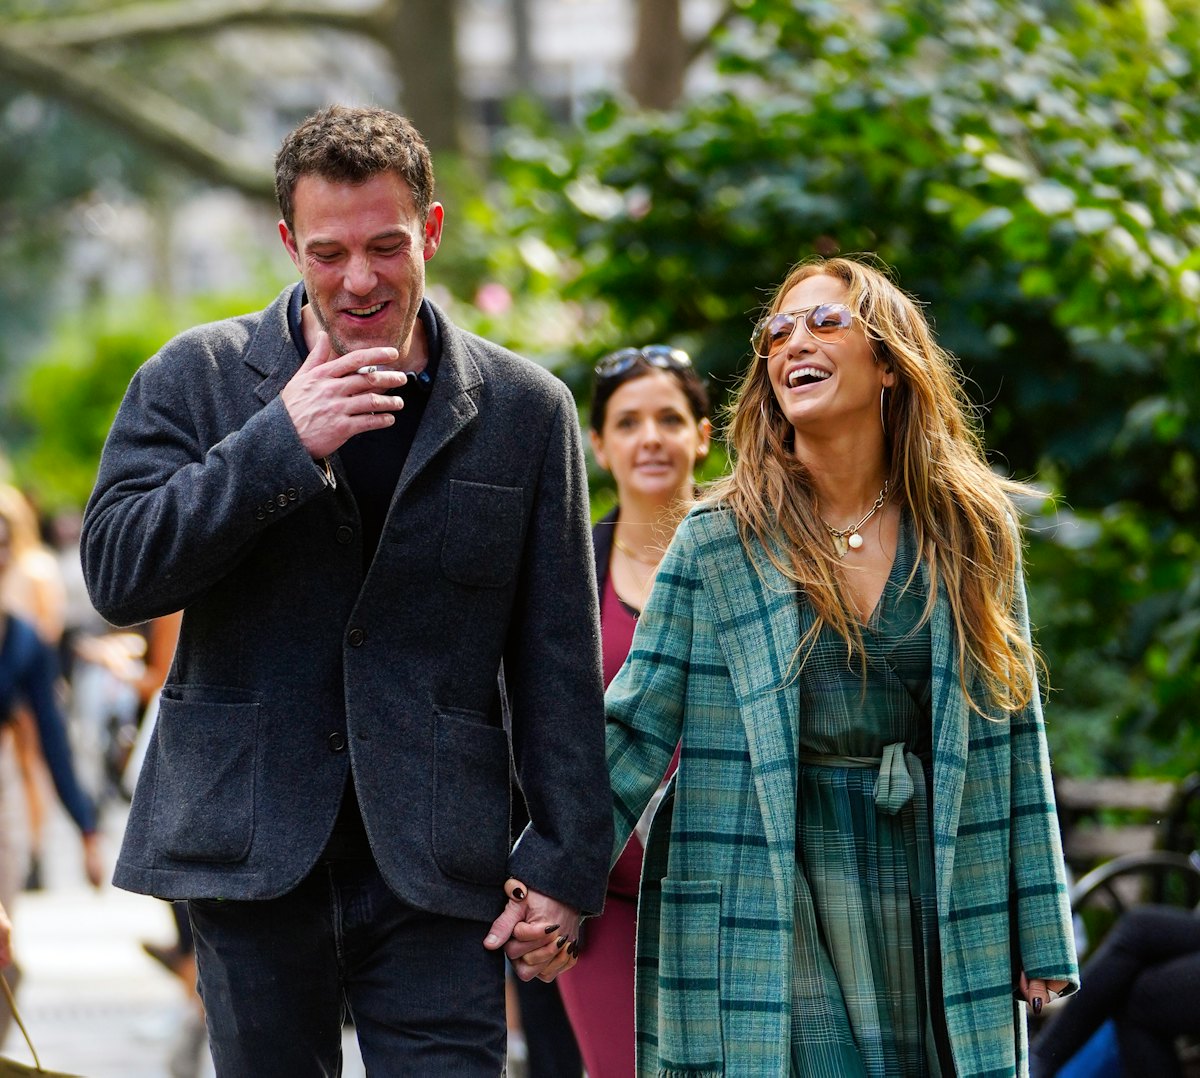 NEW YORK, NEW YORK - SEPTEMBER 26: Jennifer Lopez and Ben Affleck are seen on September 26, 2021 in ...